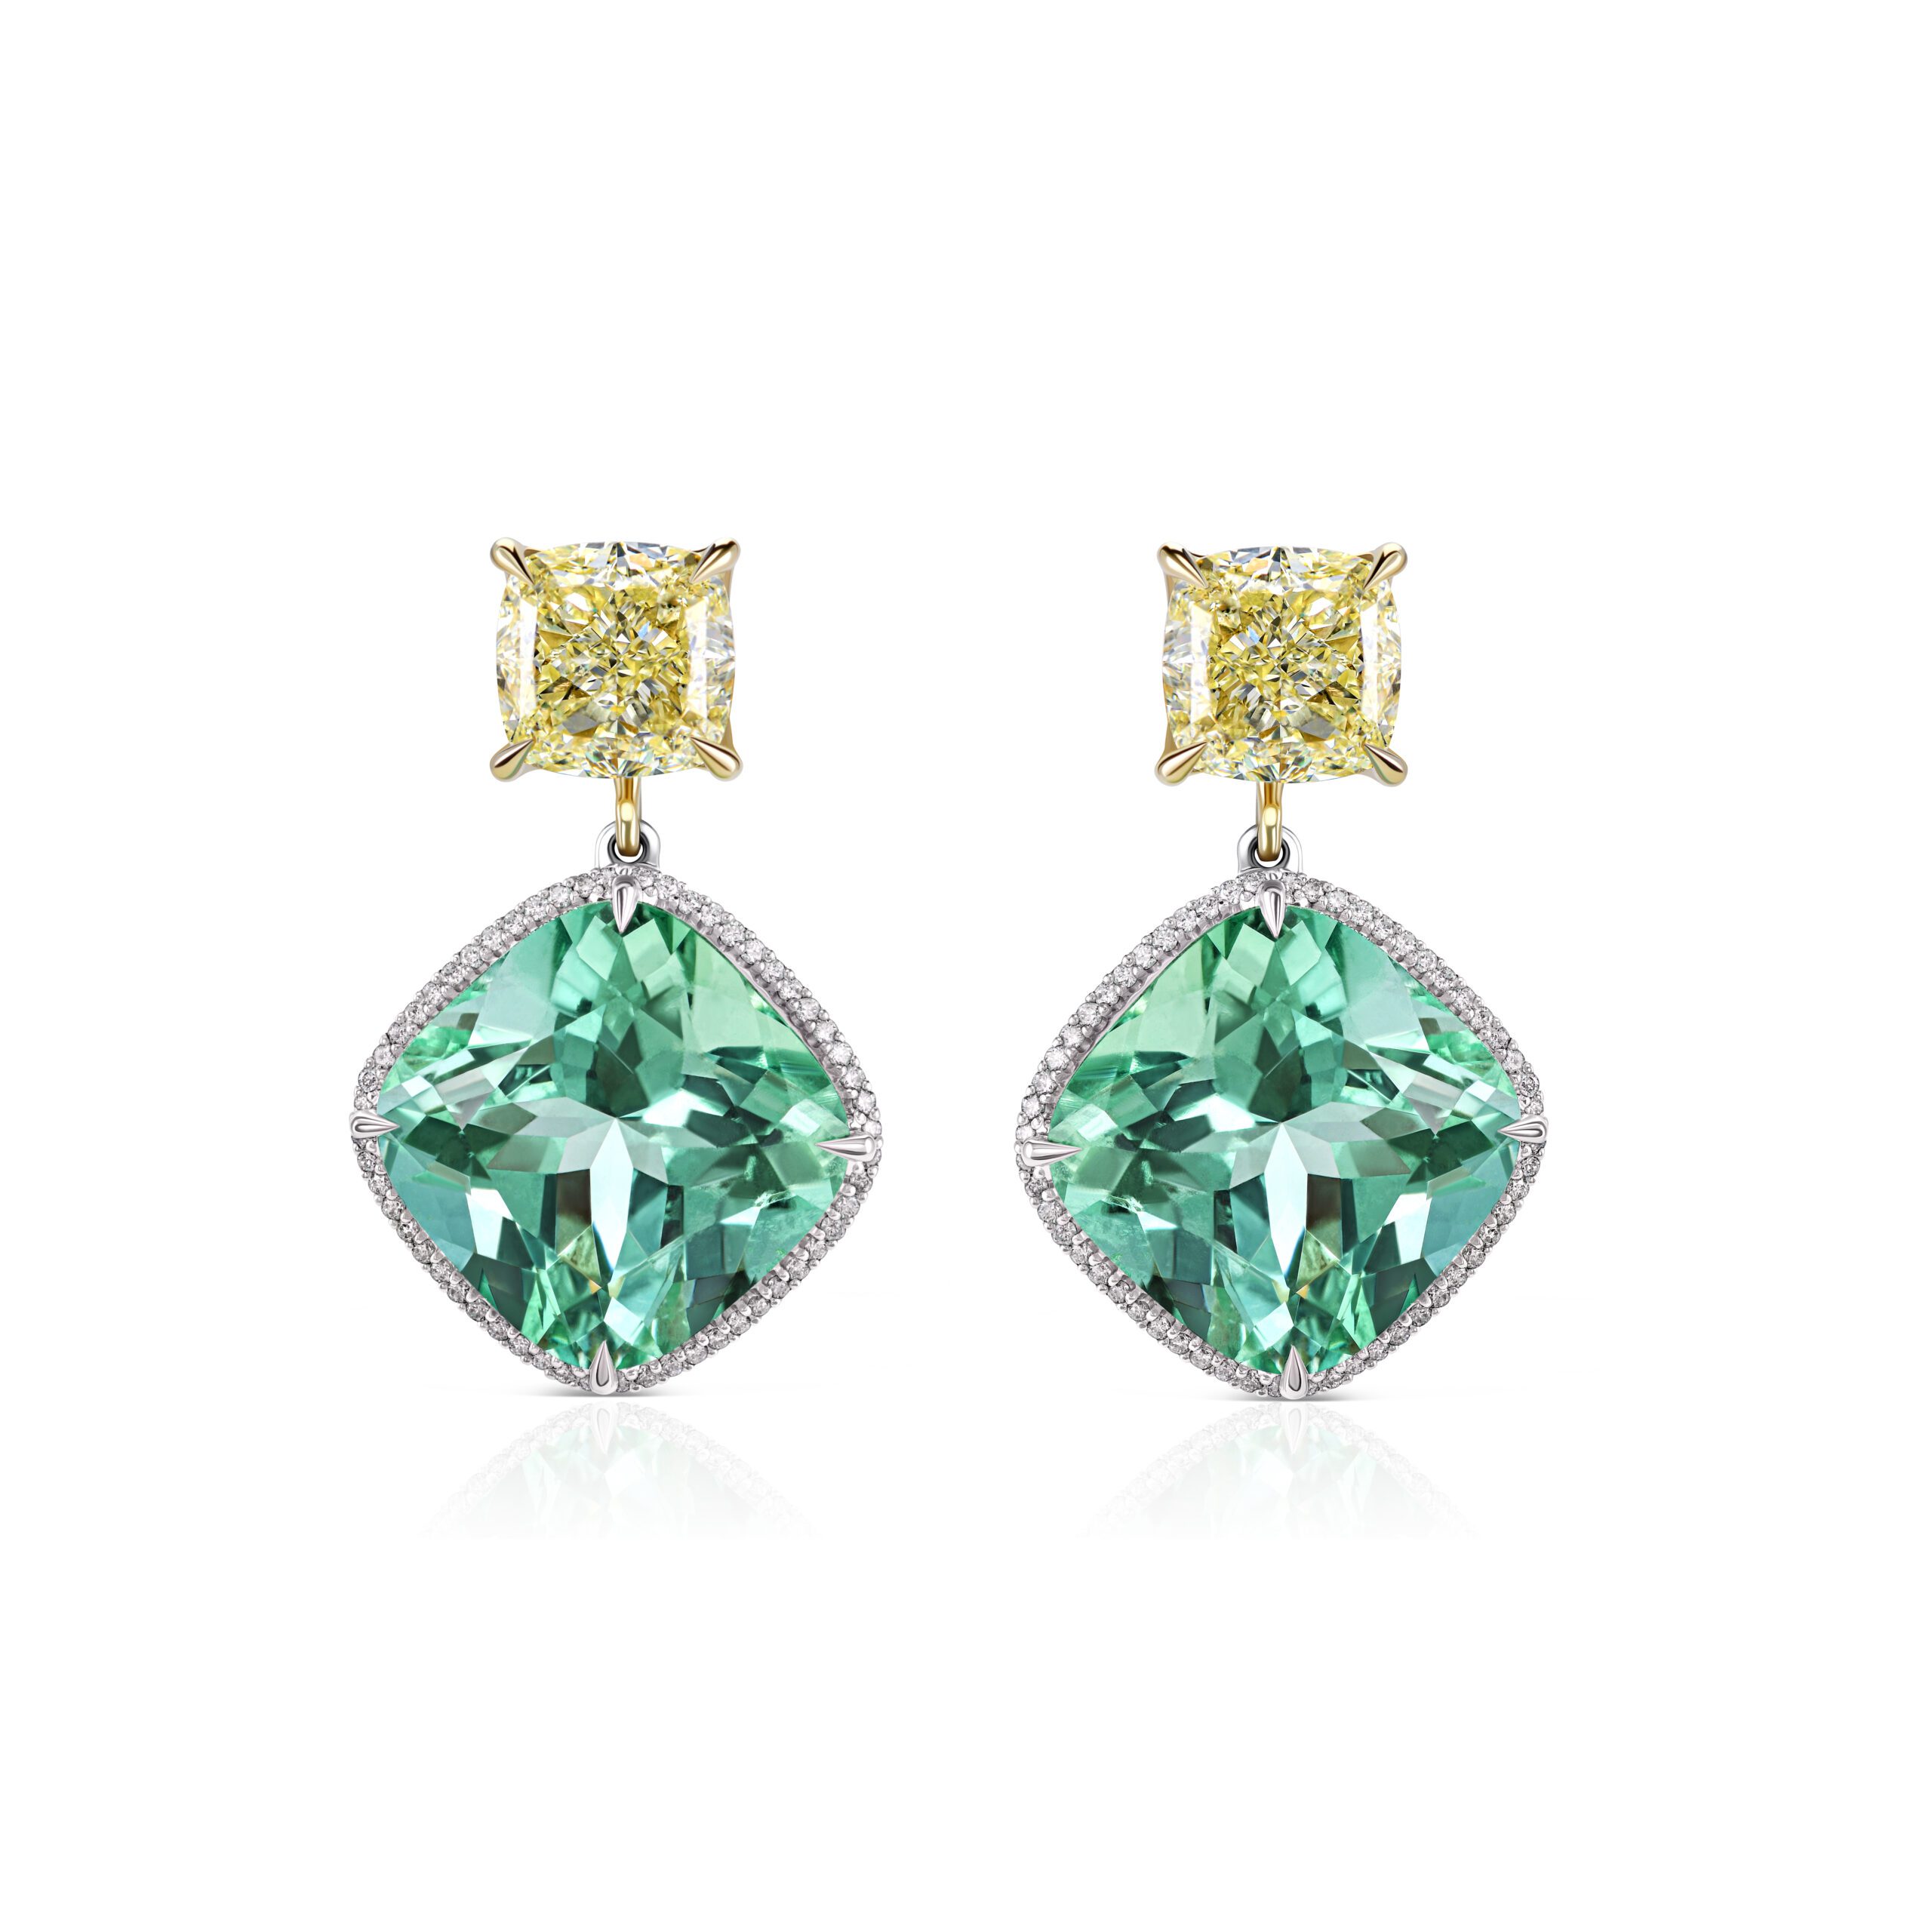 Emerald transformers earrings #1